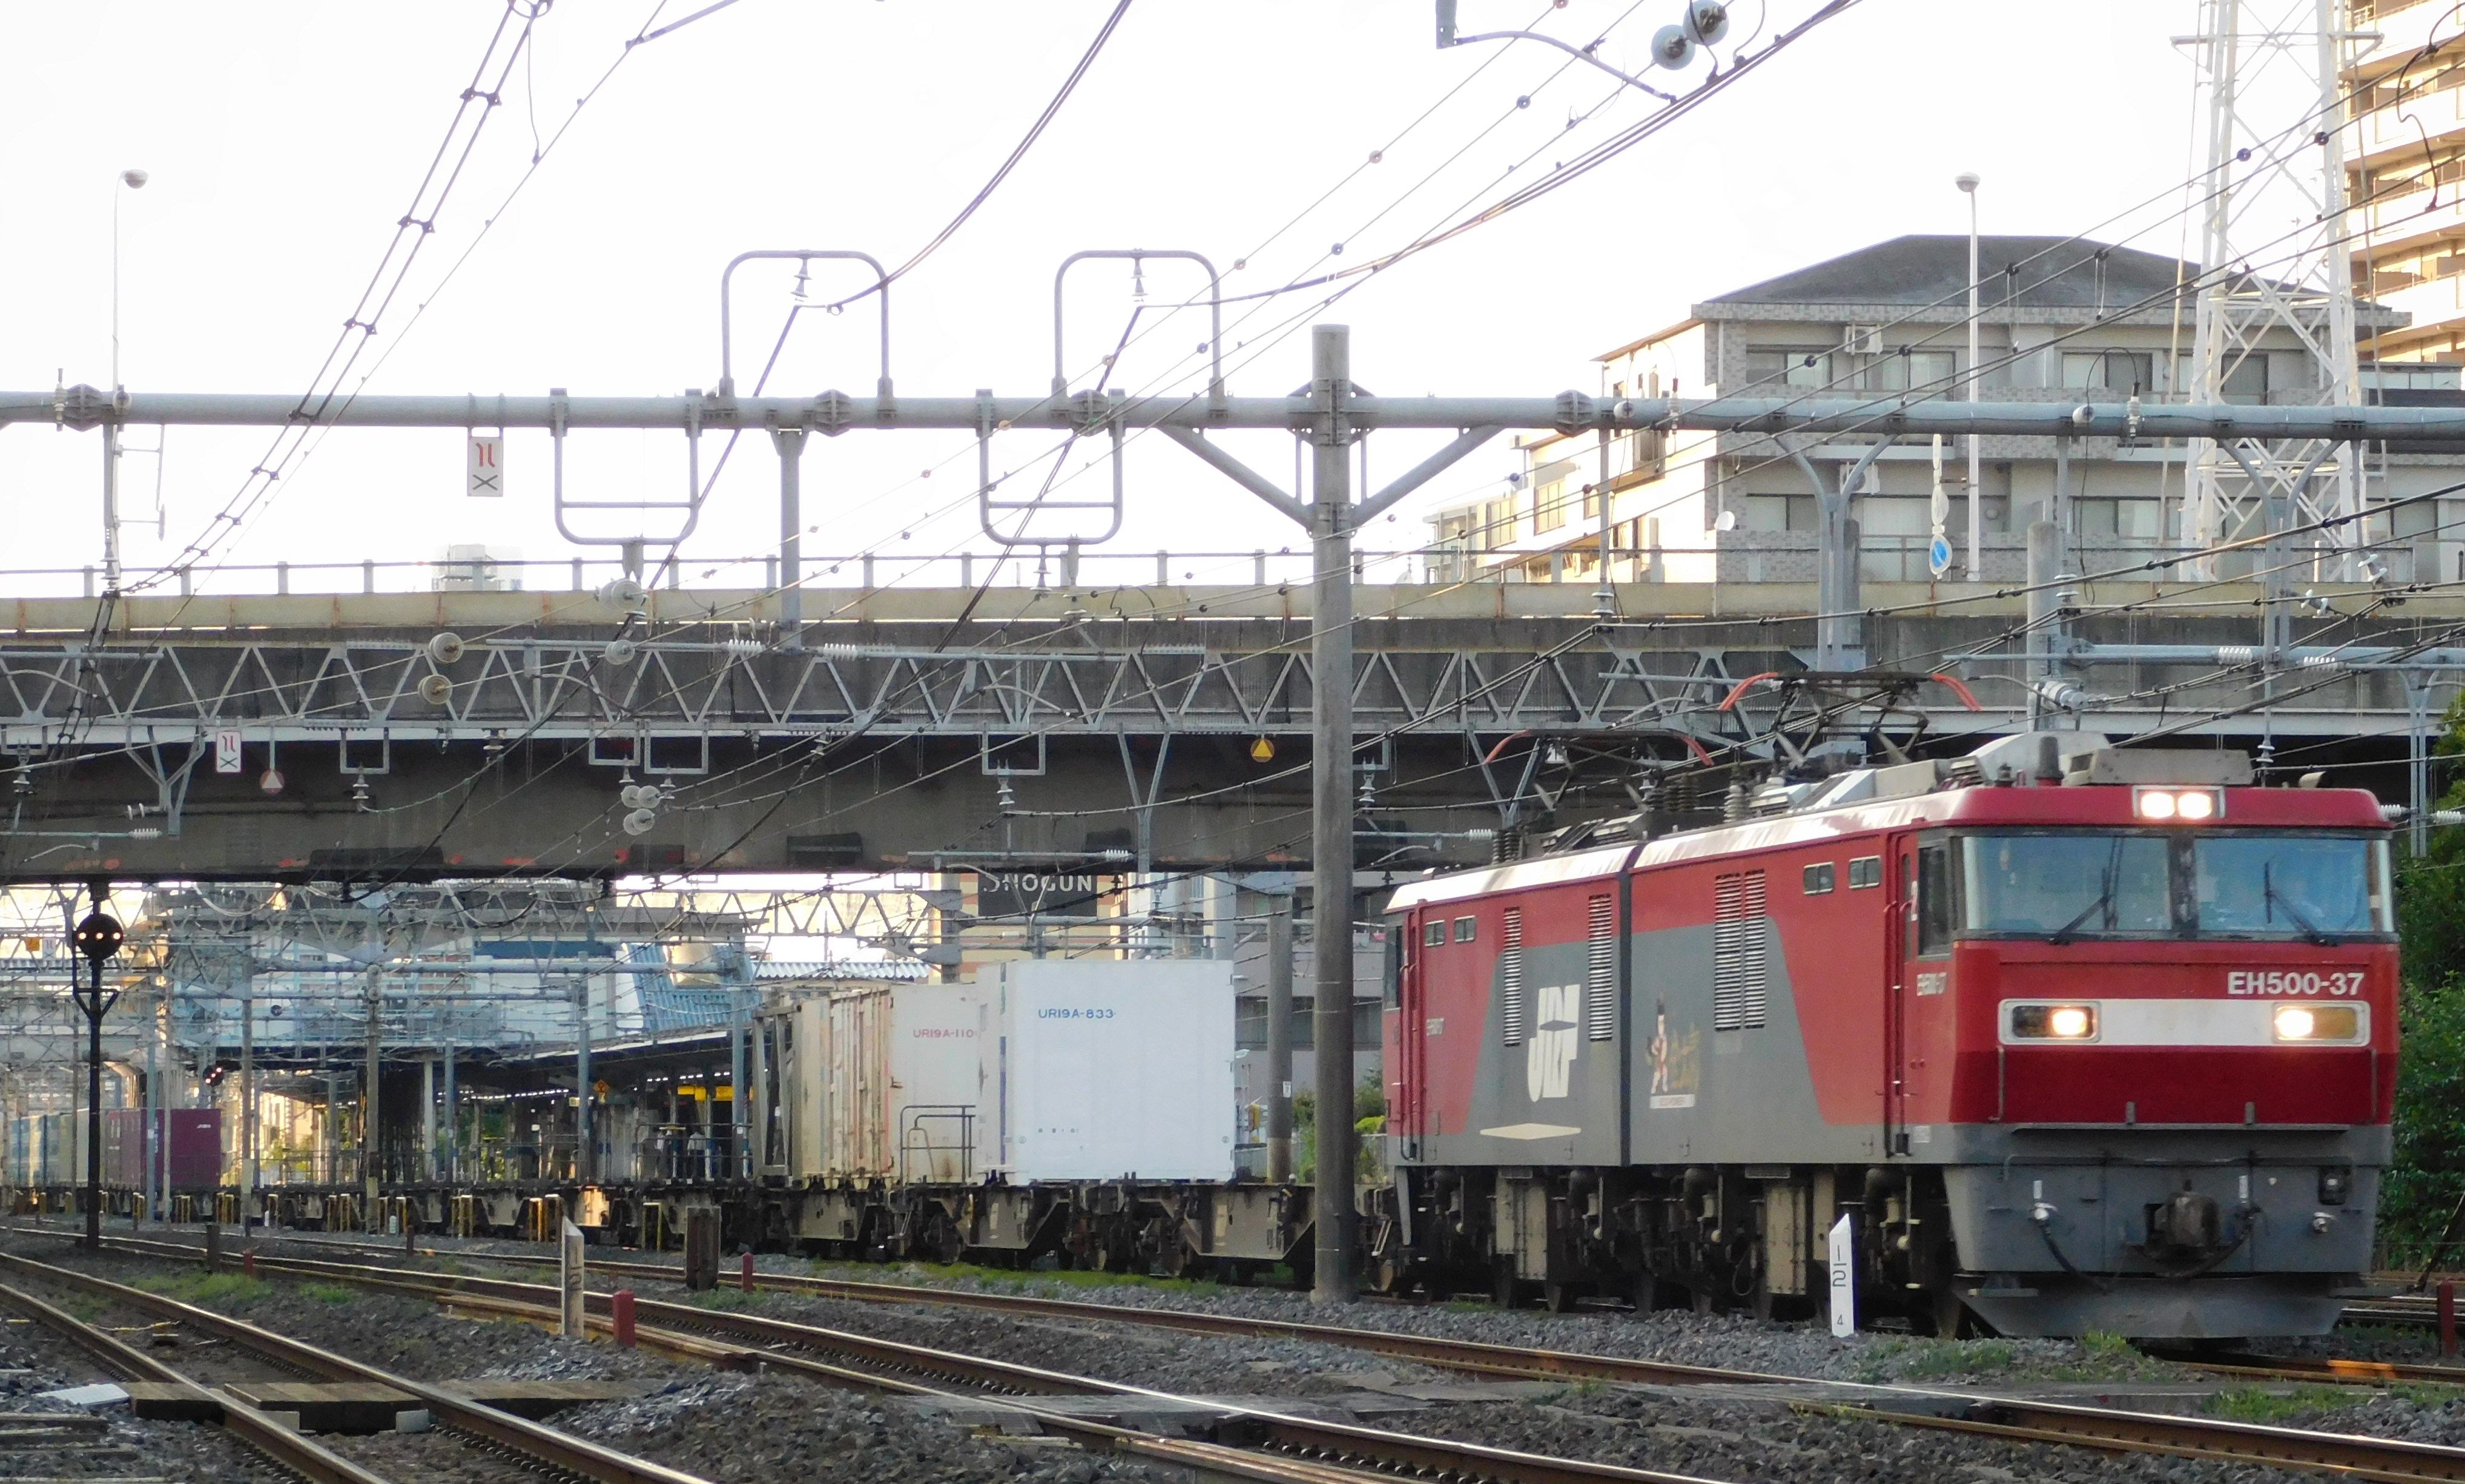 約18時間で札幌と東京を結ぶ3050レ貨物列車 Arakazu1554のブログ 楽天ブログ